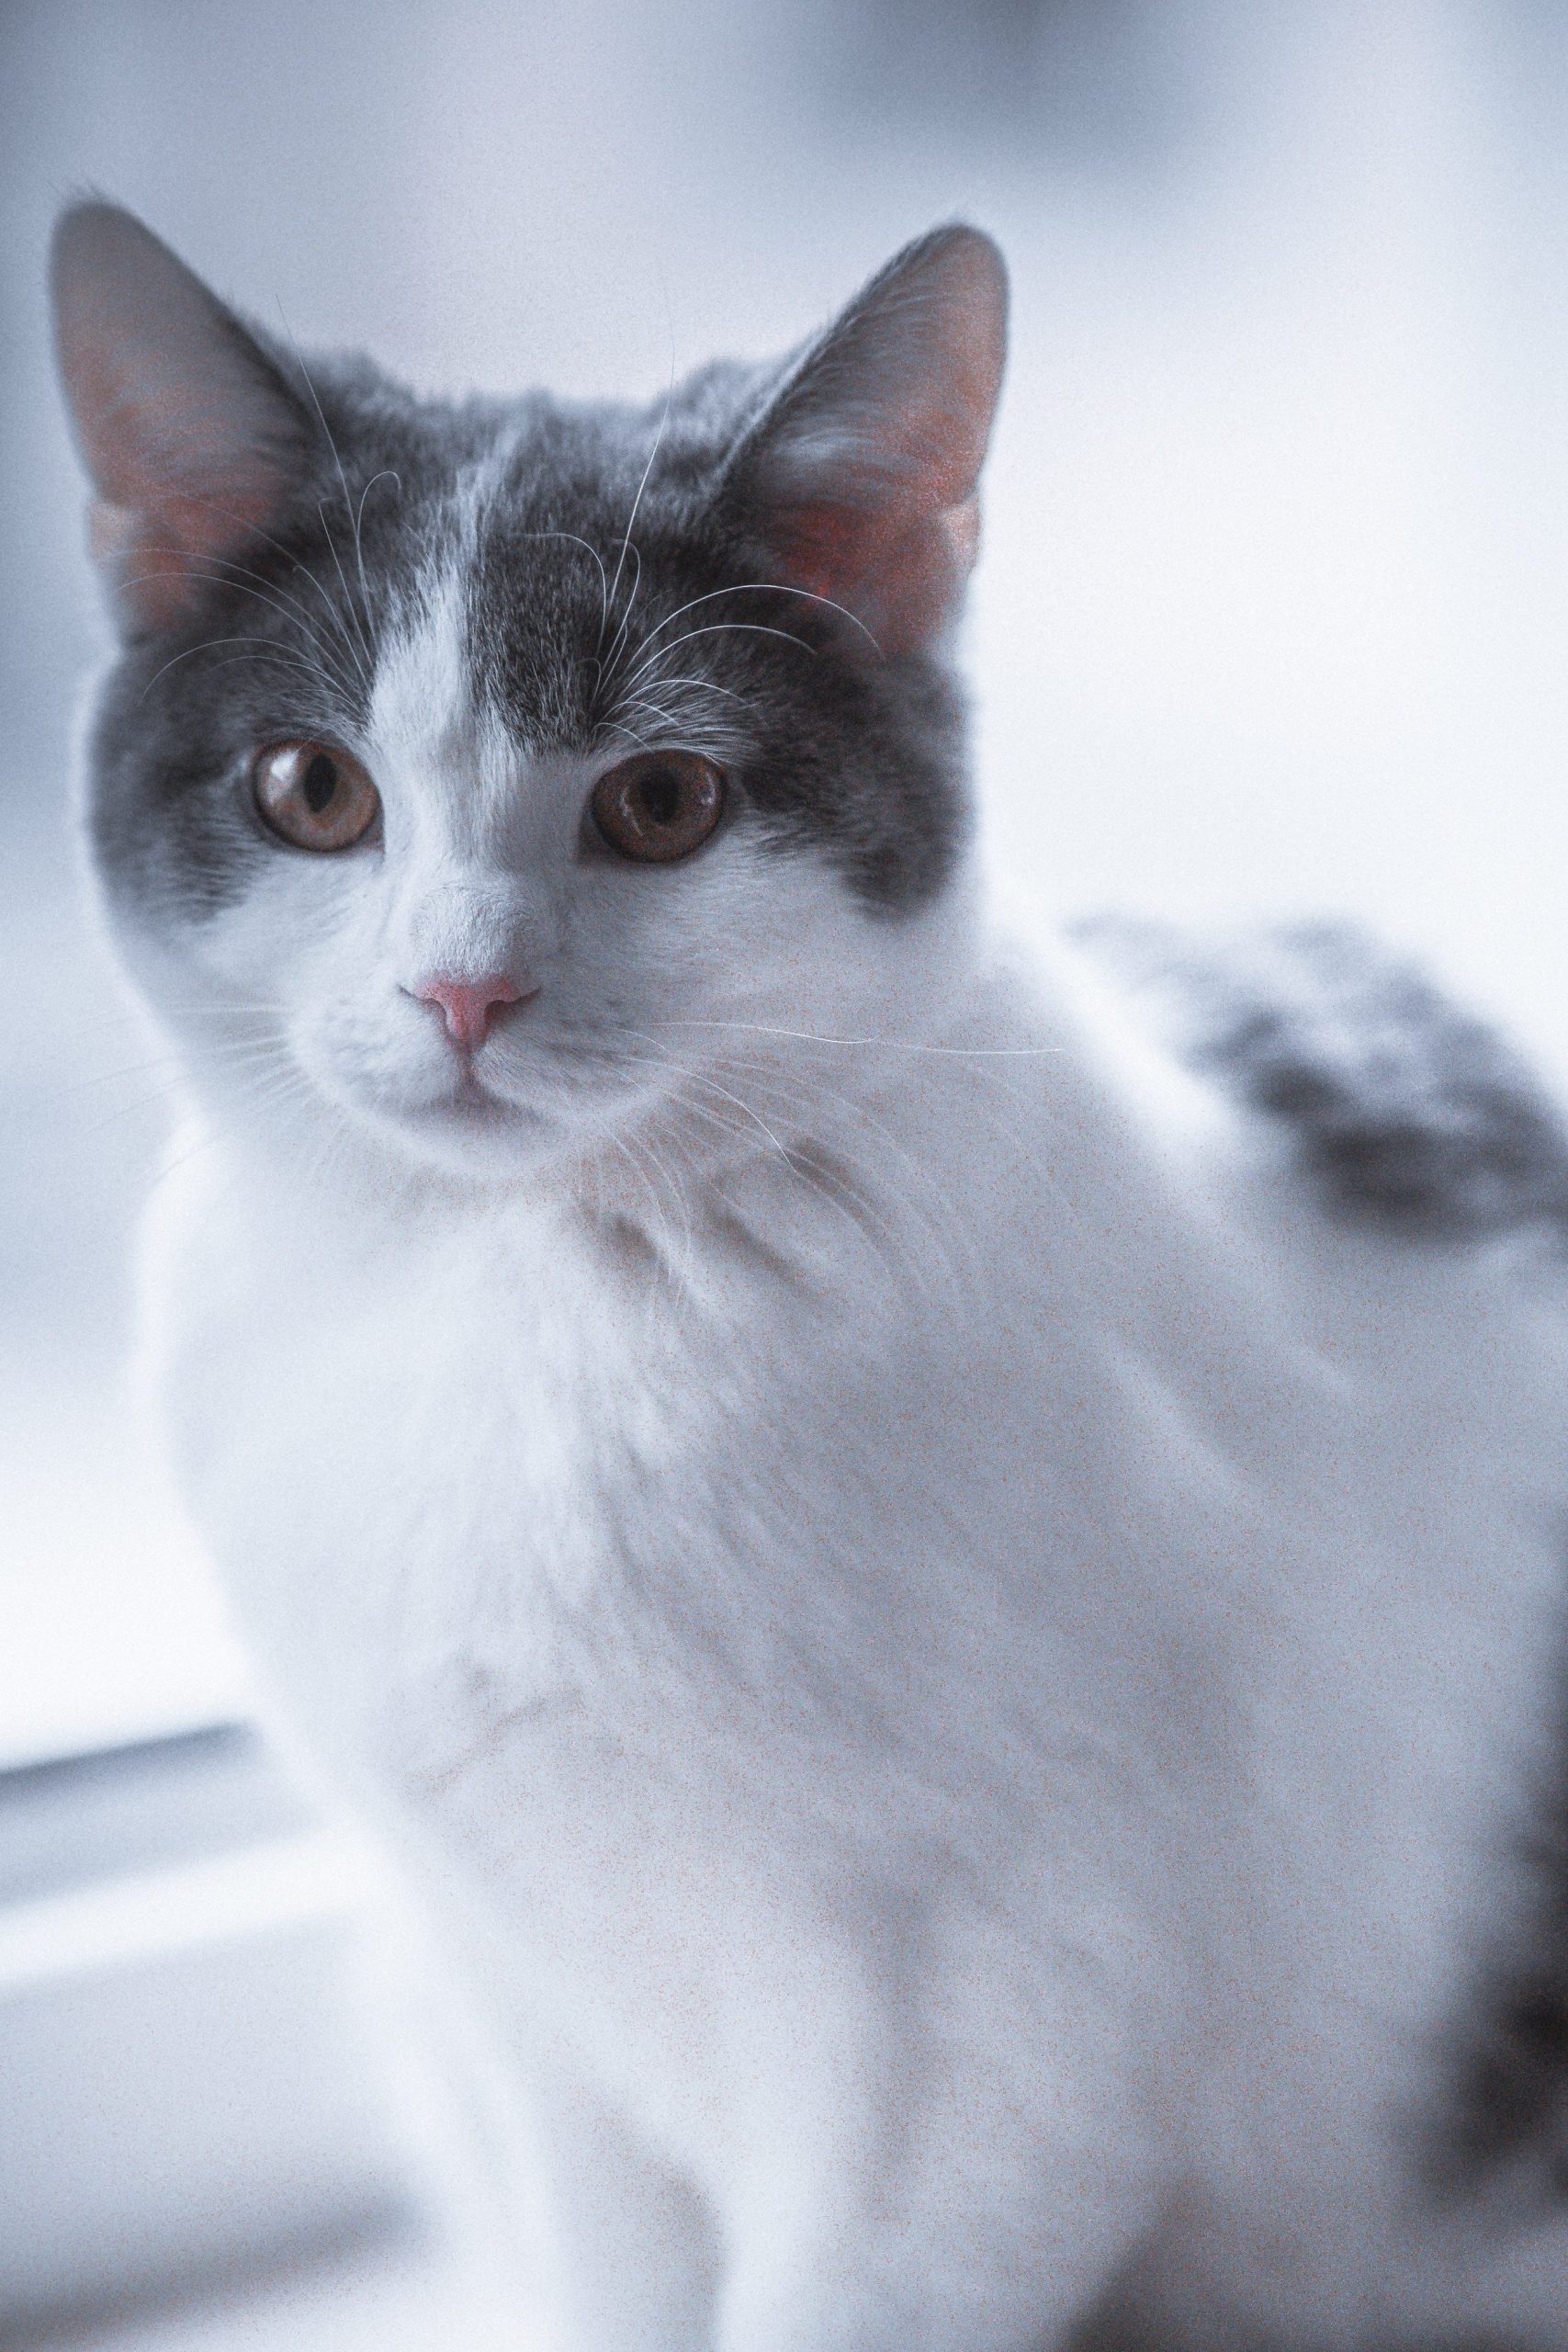 Magnifique chat blanc et gris aux yeux verts
Corysa